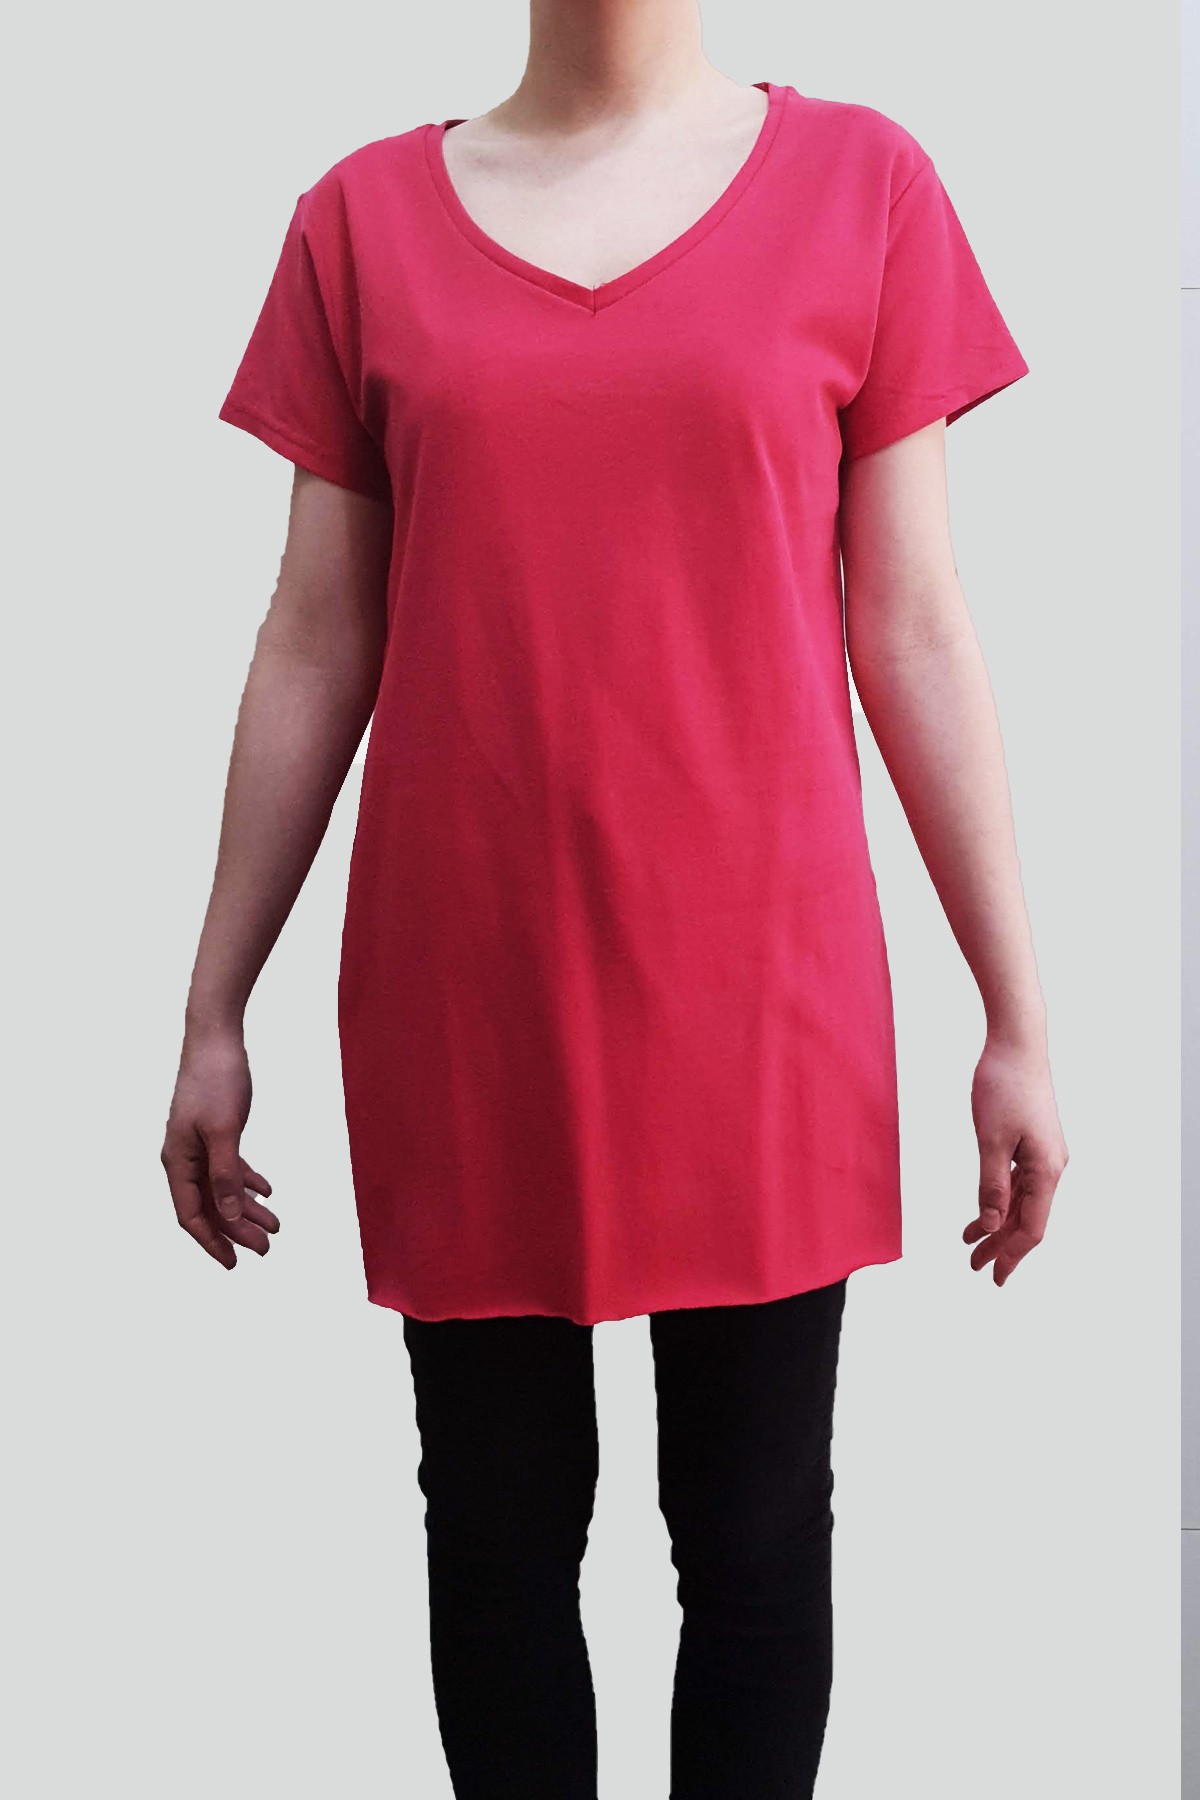 Kadın V Yaka Uzun Pamuklu T-Shirt - Fuşya